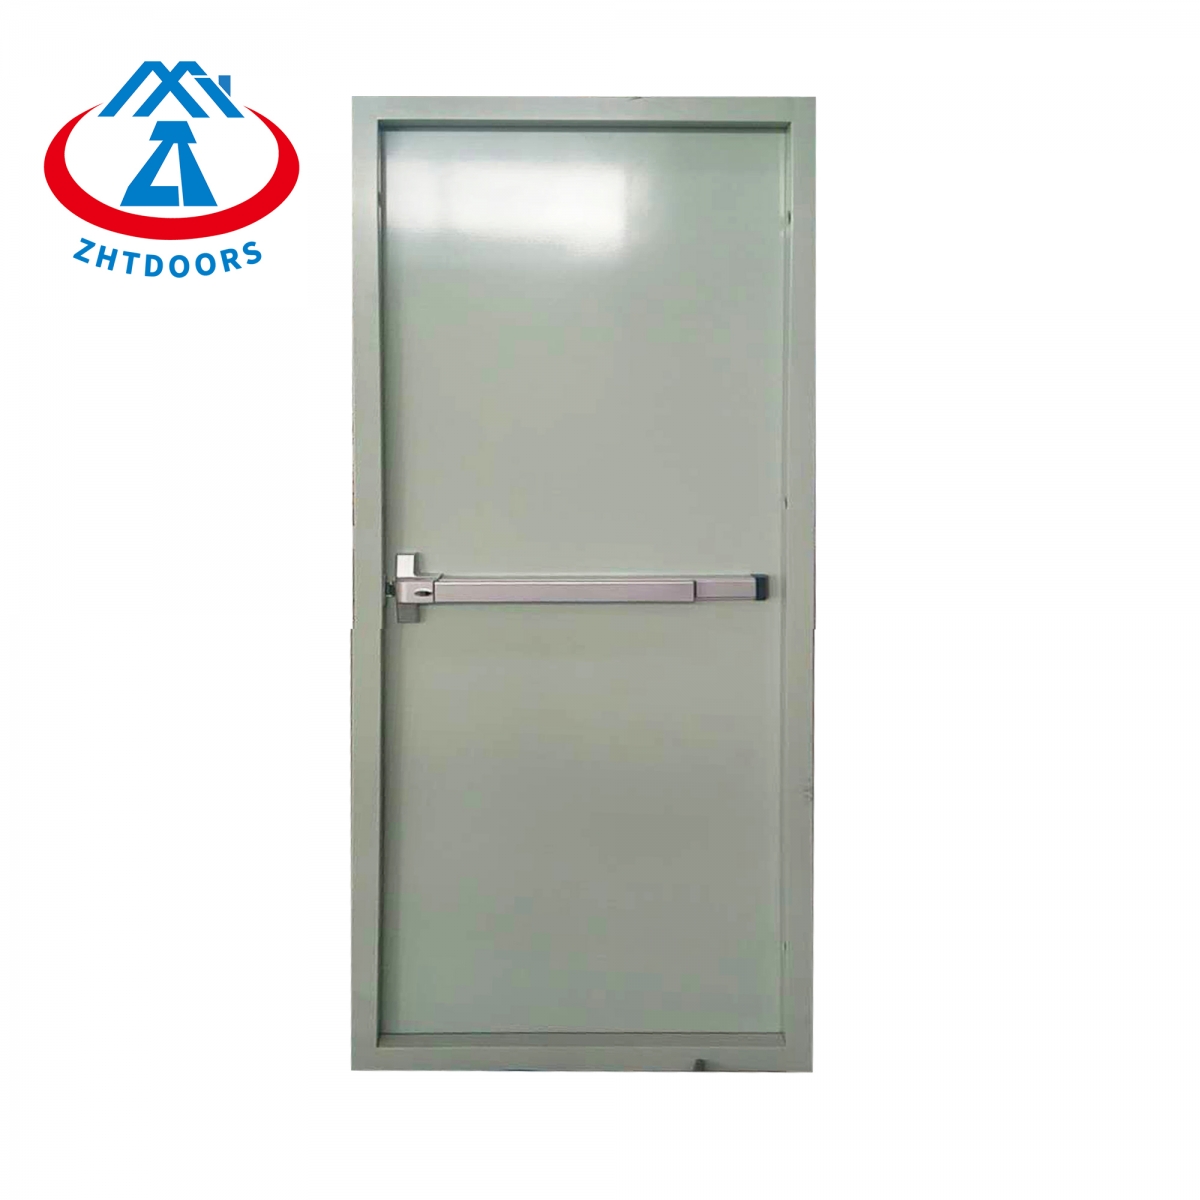 Shang Hai Fire Door-ZTFIRE Door- Fire Door, Fireproof Door, Fire rated Door, Fire Resistant Door, Steel Door, Metal Door, Exit Door